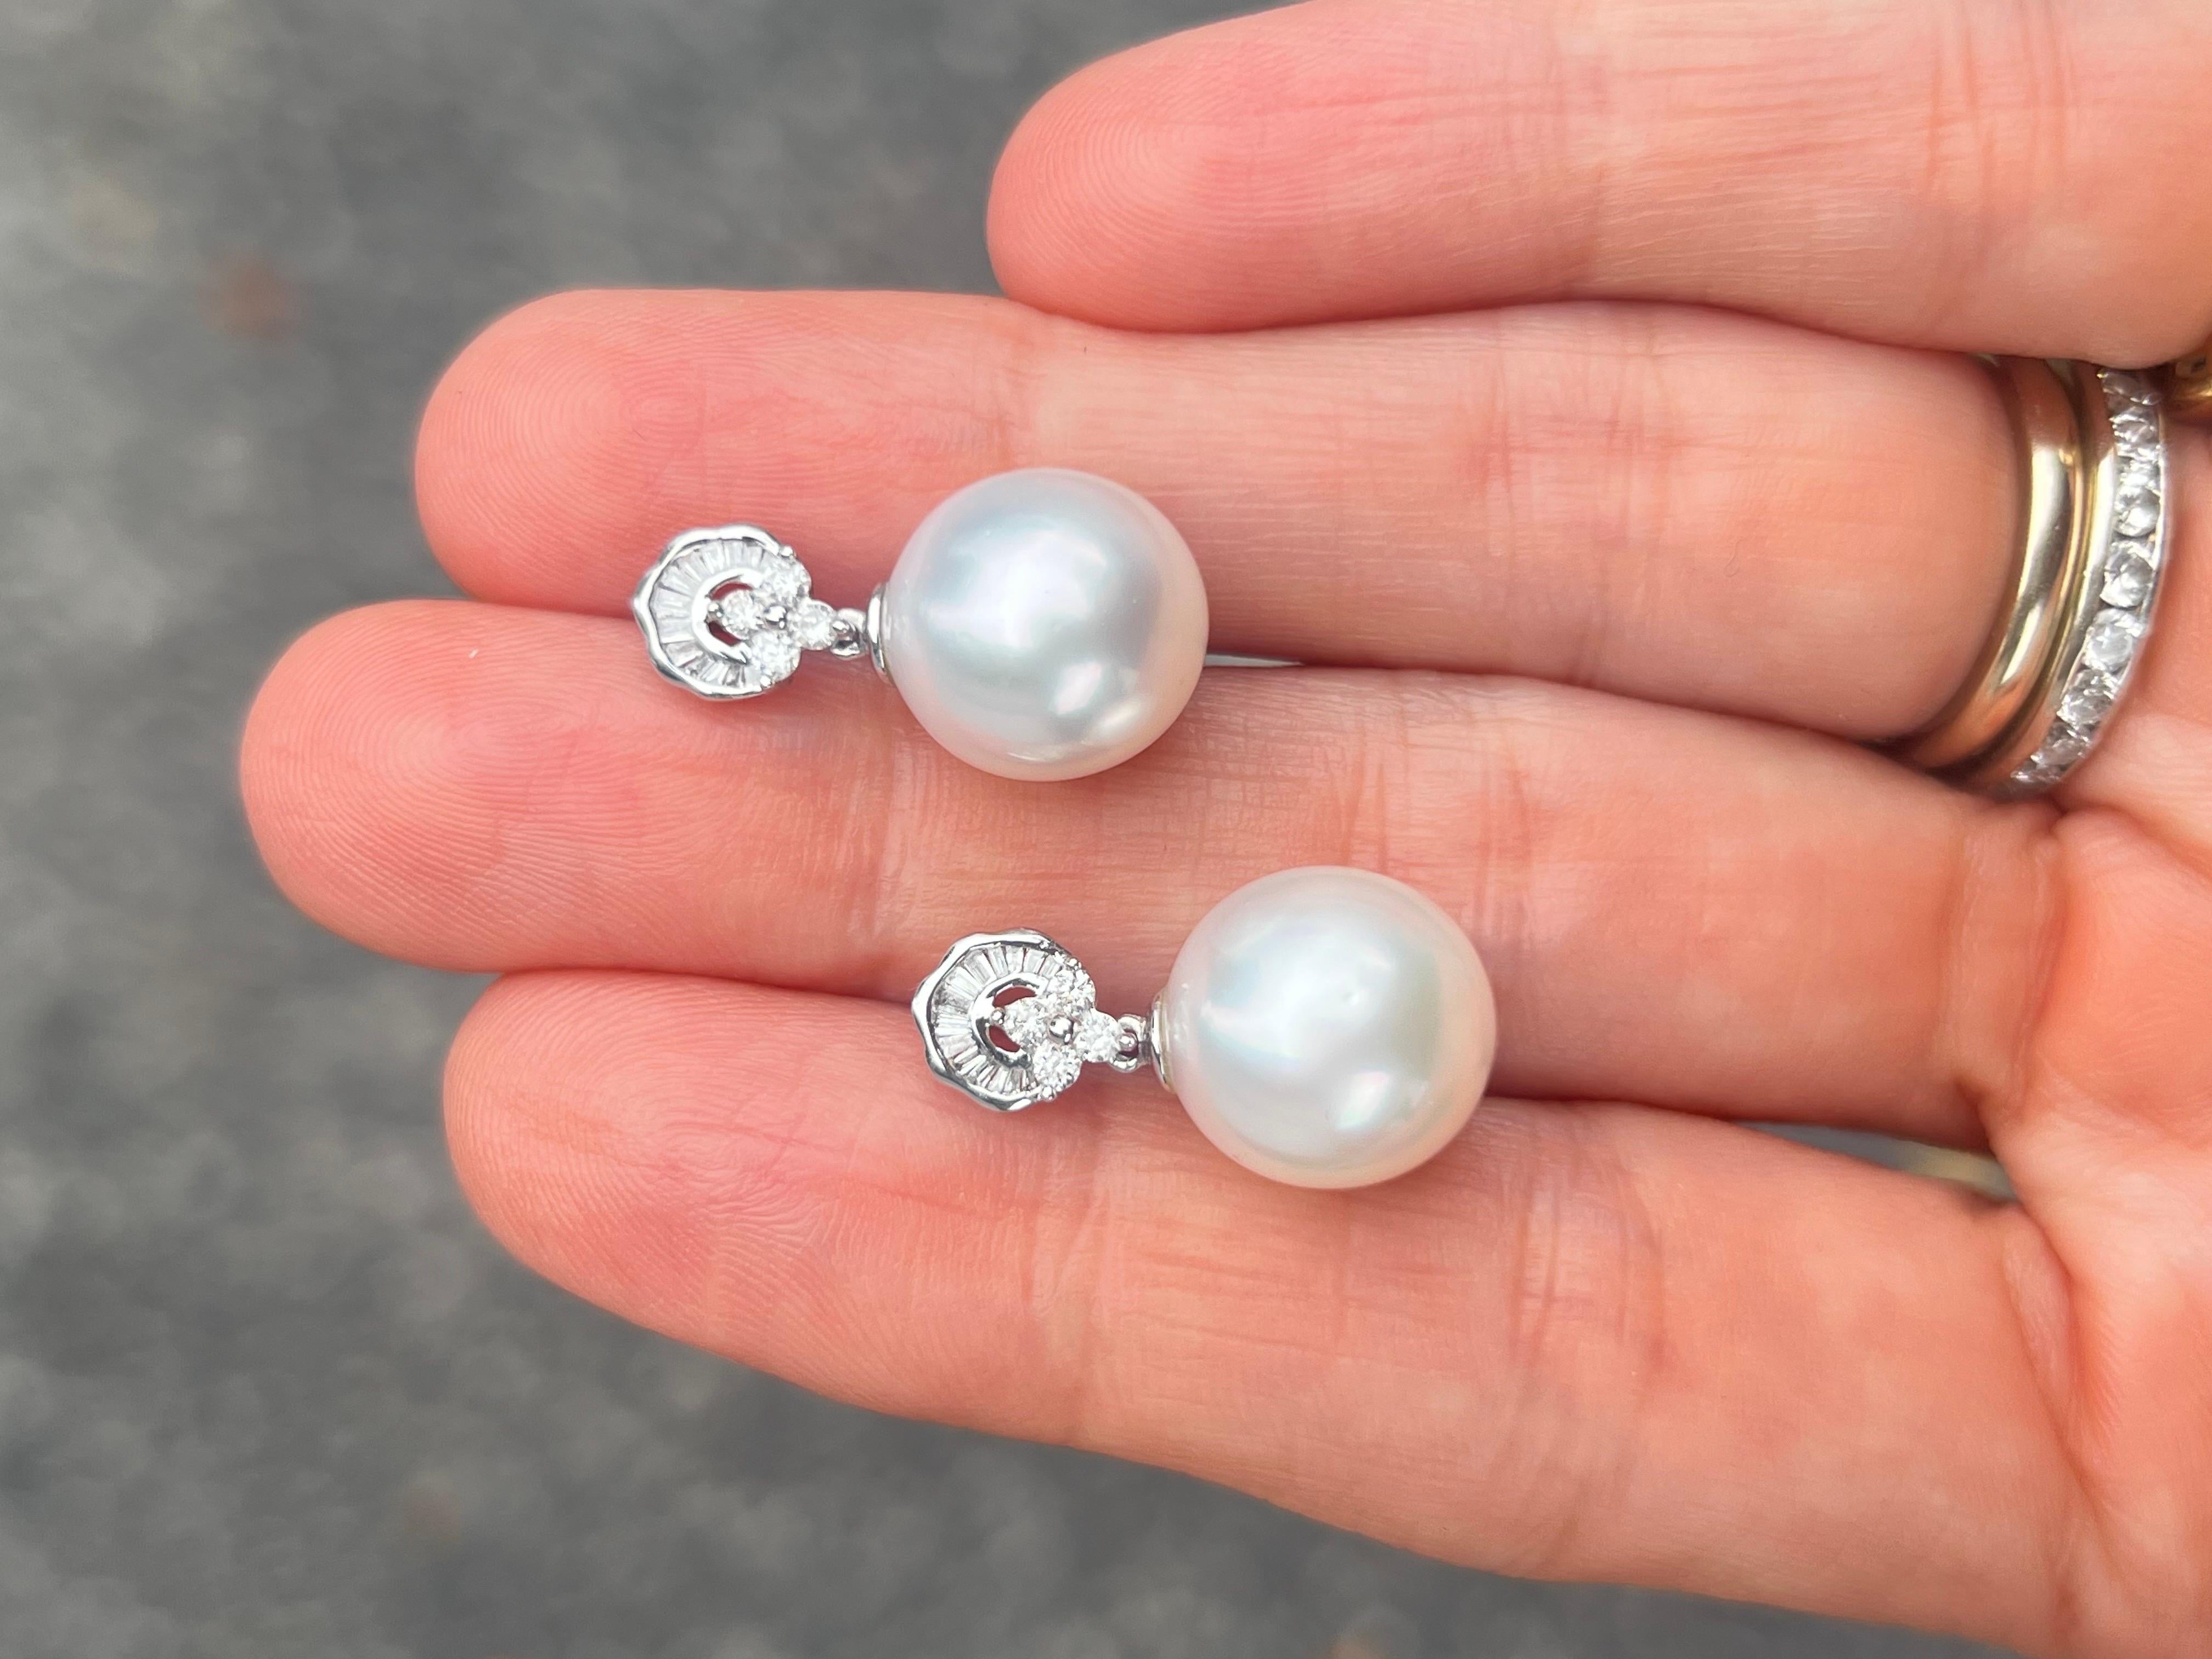 Verleihen Sie Ihrem Ensemble einen femininen Touch mit diesen wunderschönen Diamant- und Perlen-Ohrringen. Die Baguette- und Runddiamanten bilden ein architektonisches Element, das an das New-Deco-Design erinnert. Darunter baumelt eine glänzende,